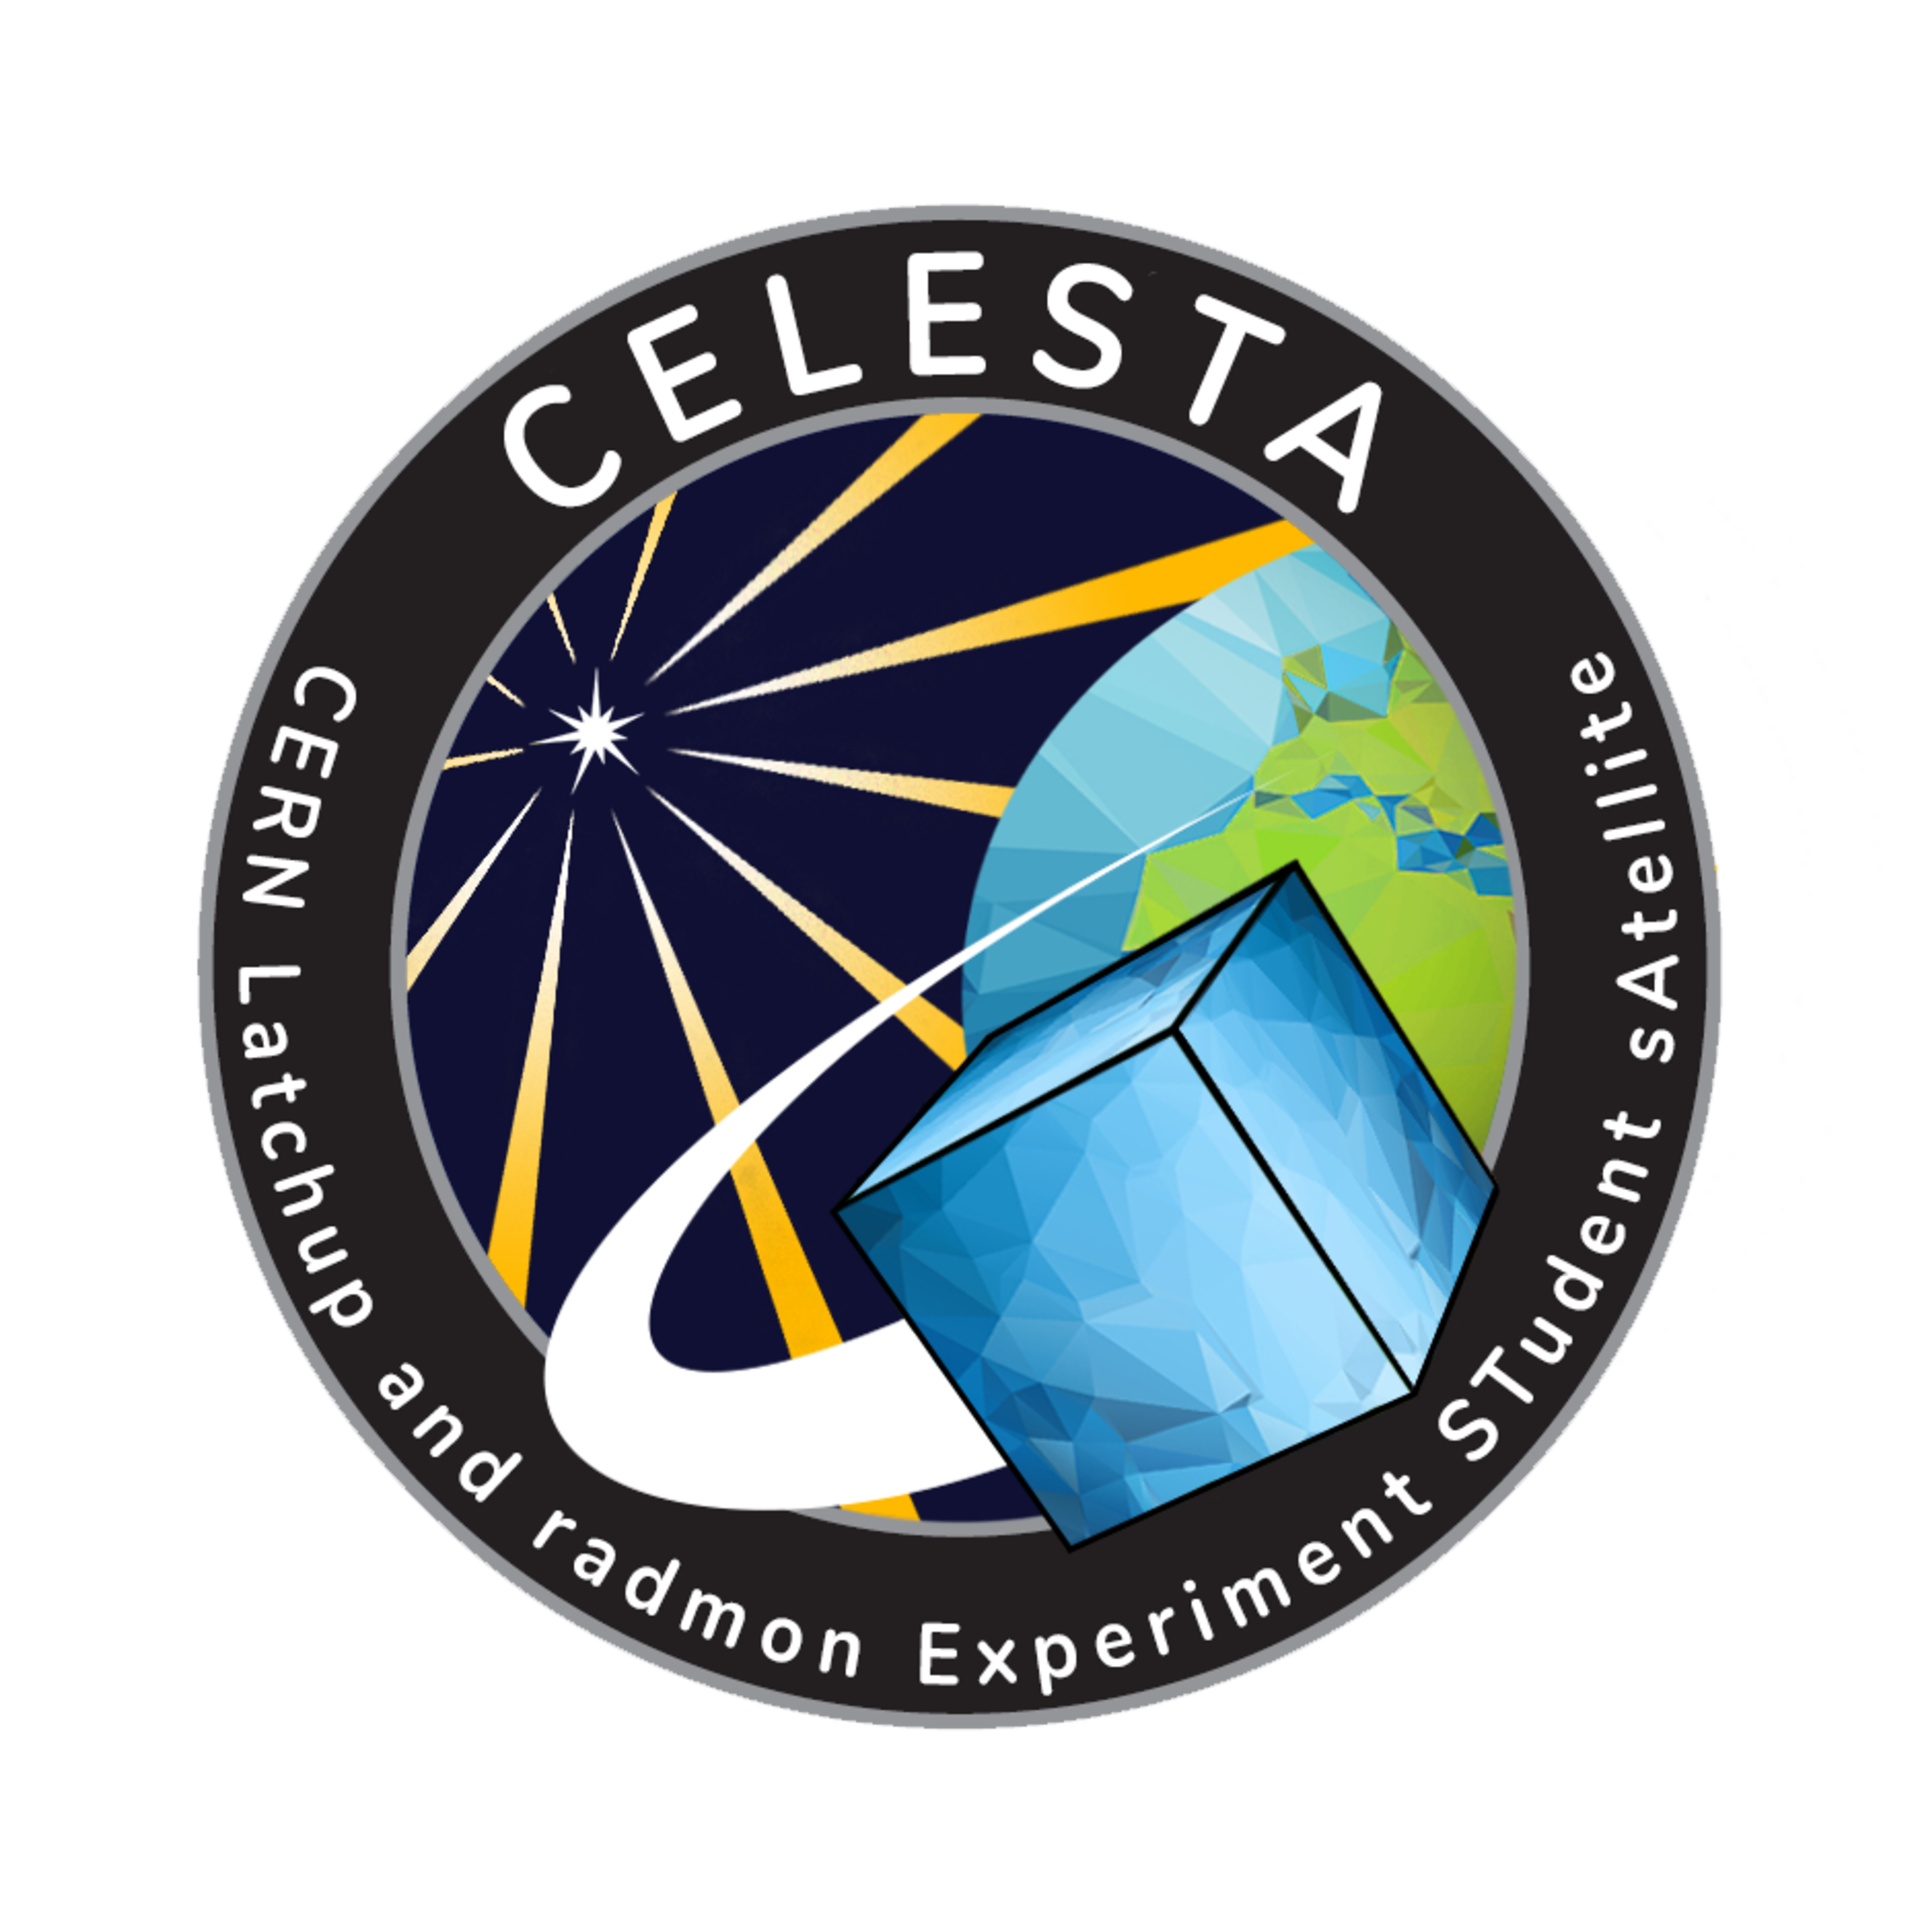 CELESTA team logo